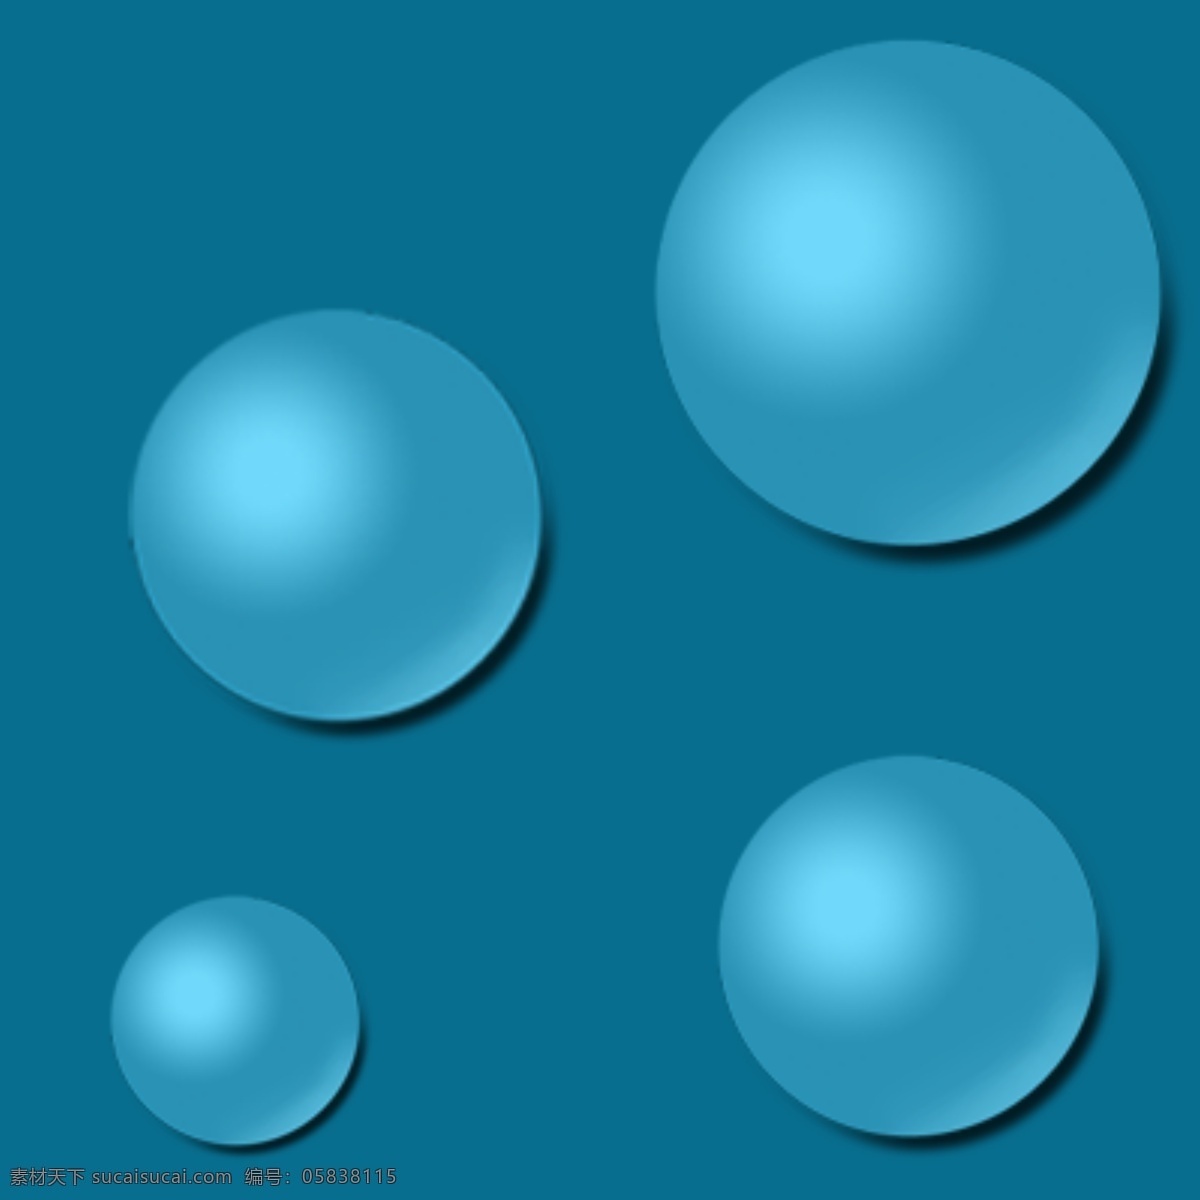 蓝色球体 球体 蓝色 背景 球 几何体 底纹边框 其他素材